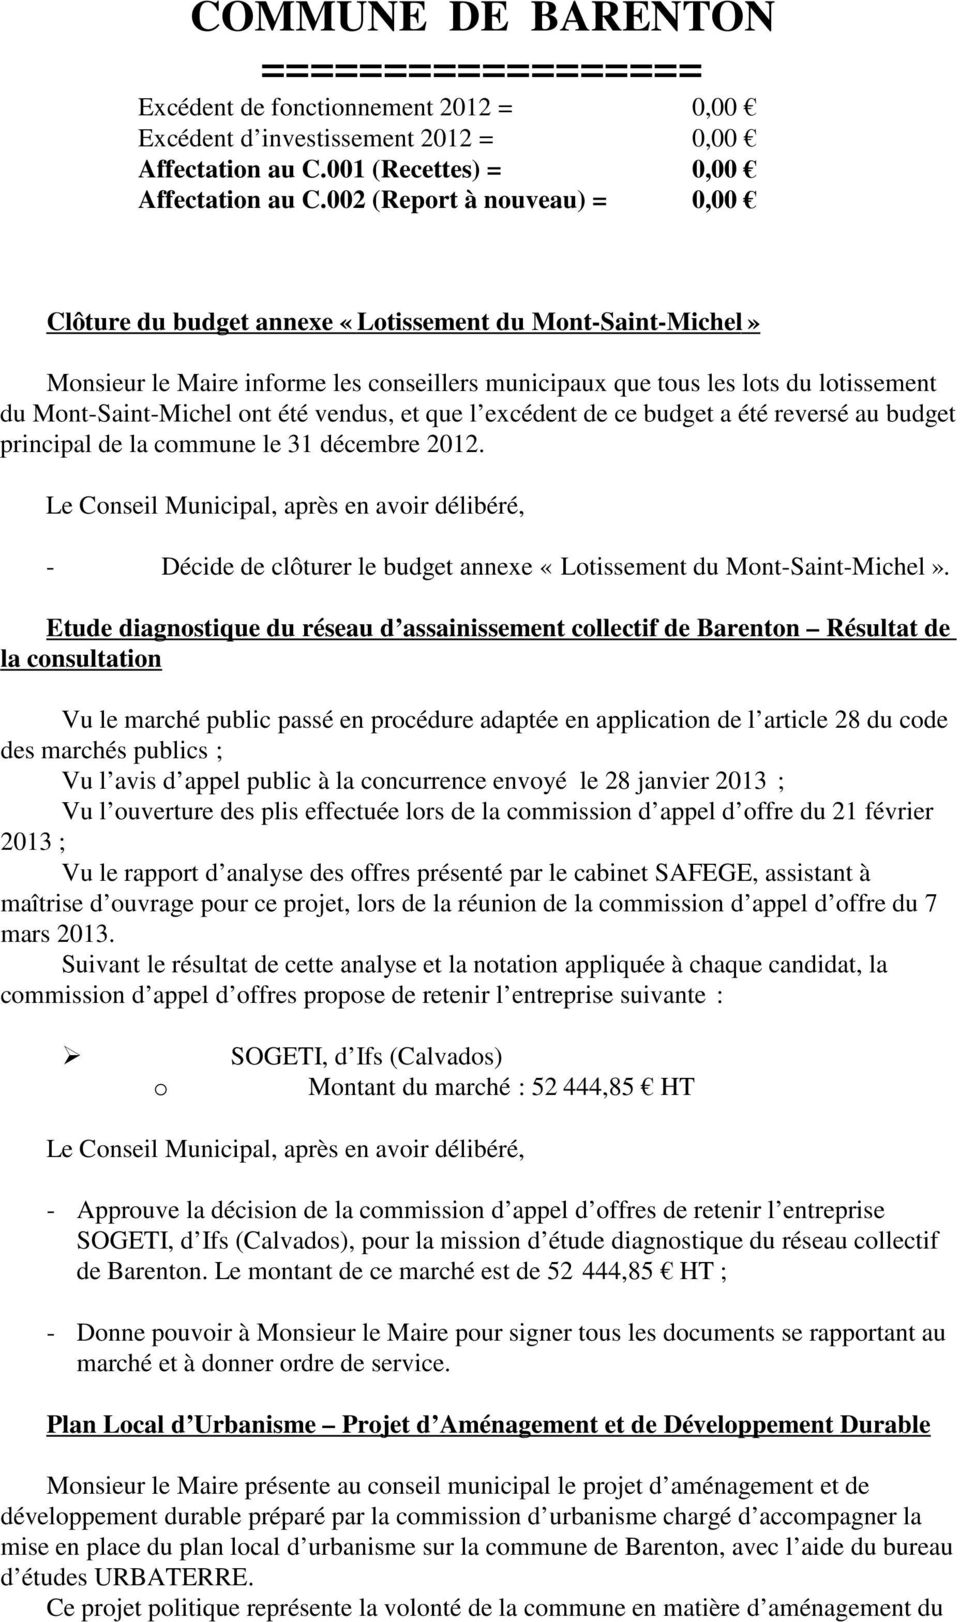 vendus, et que l excédent de ce budget a été reversé au budget principal de la cmmune le 31 décembre 2012. - Décide de clôturer le budget annexe «Ltissement du Mnt-Saint-Michel».